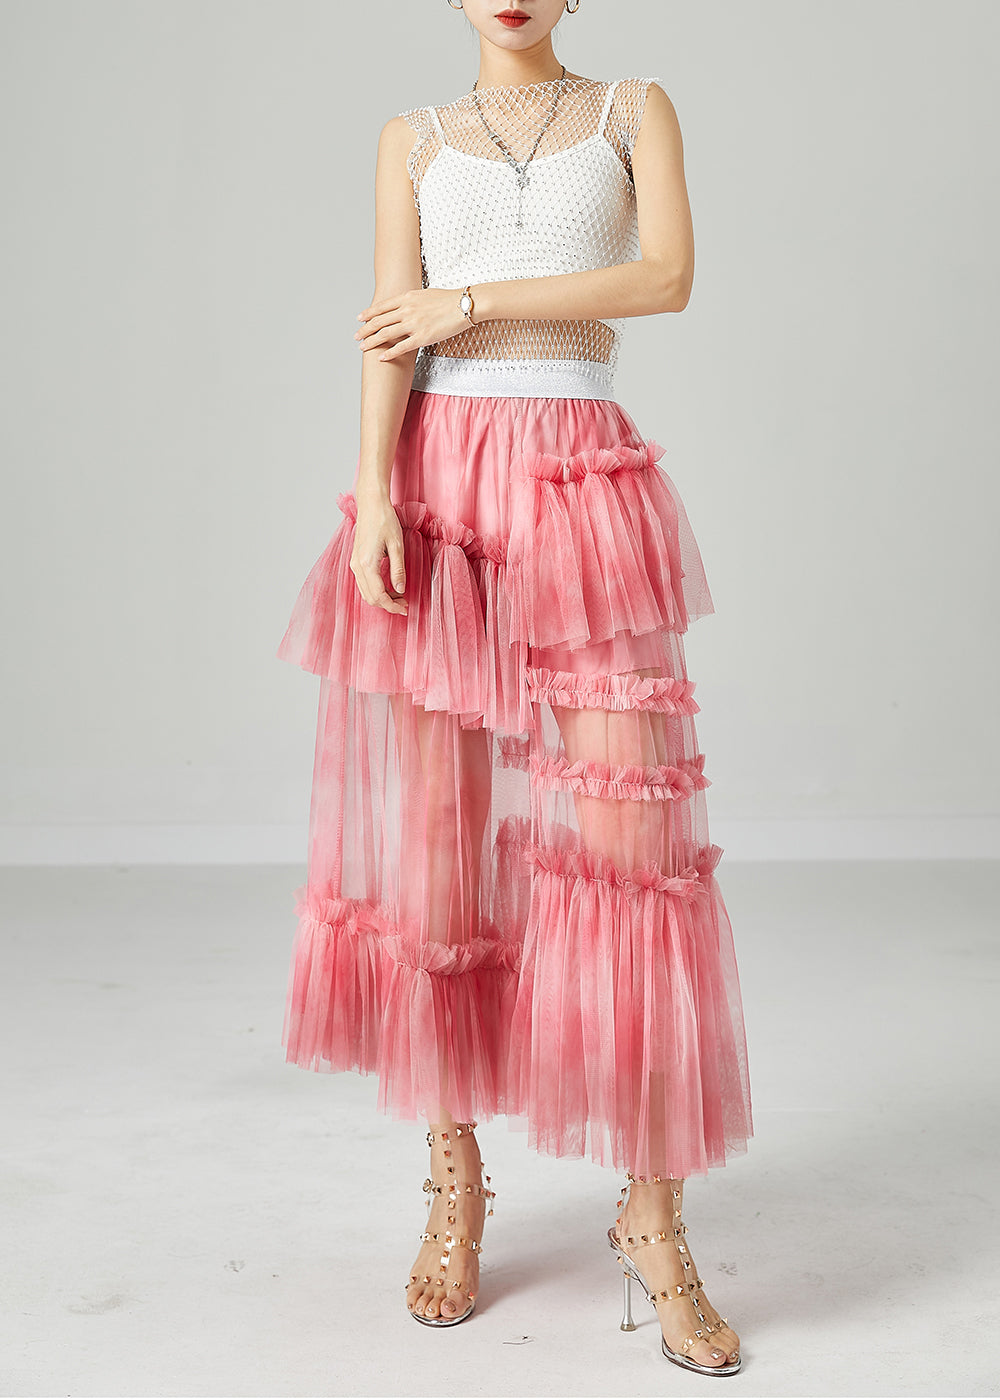 Modern Pink Elastic Waist Patchwork Hollow Out Tulle Skirt Summer